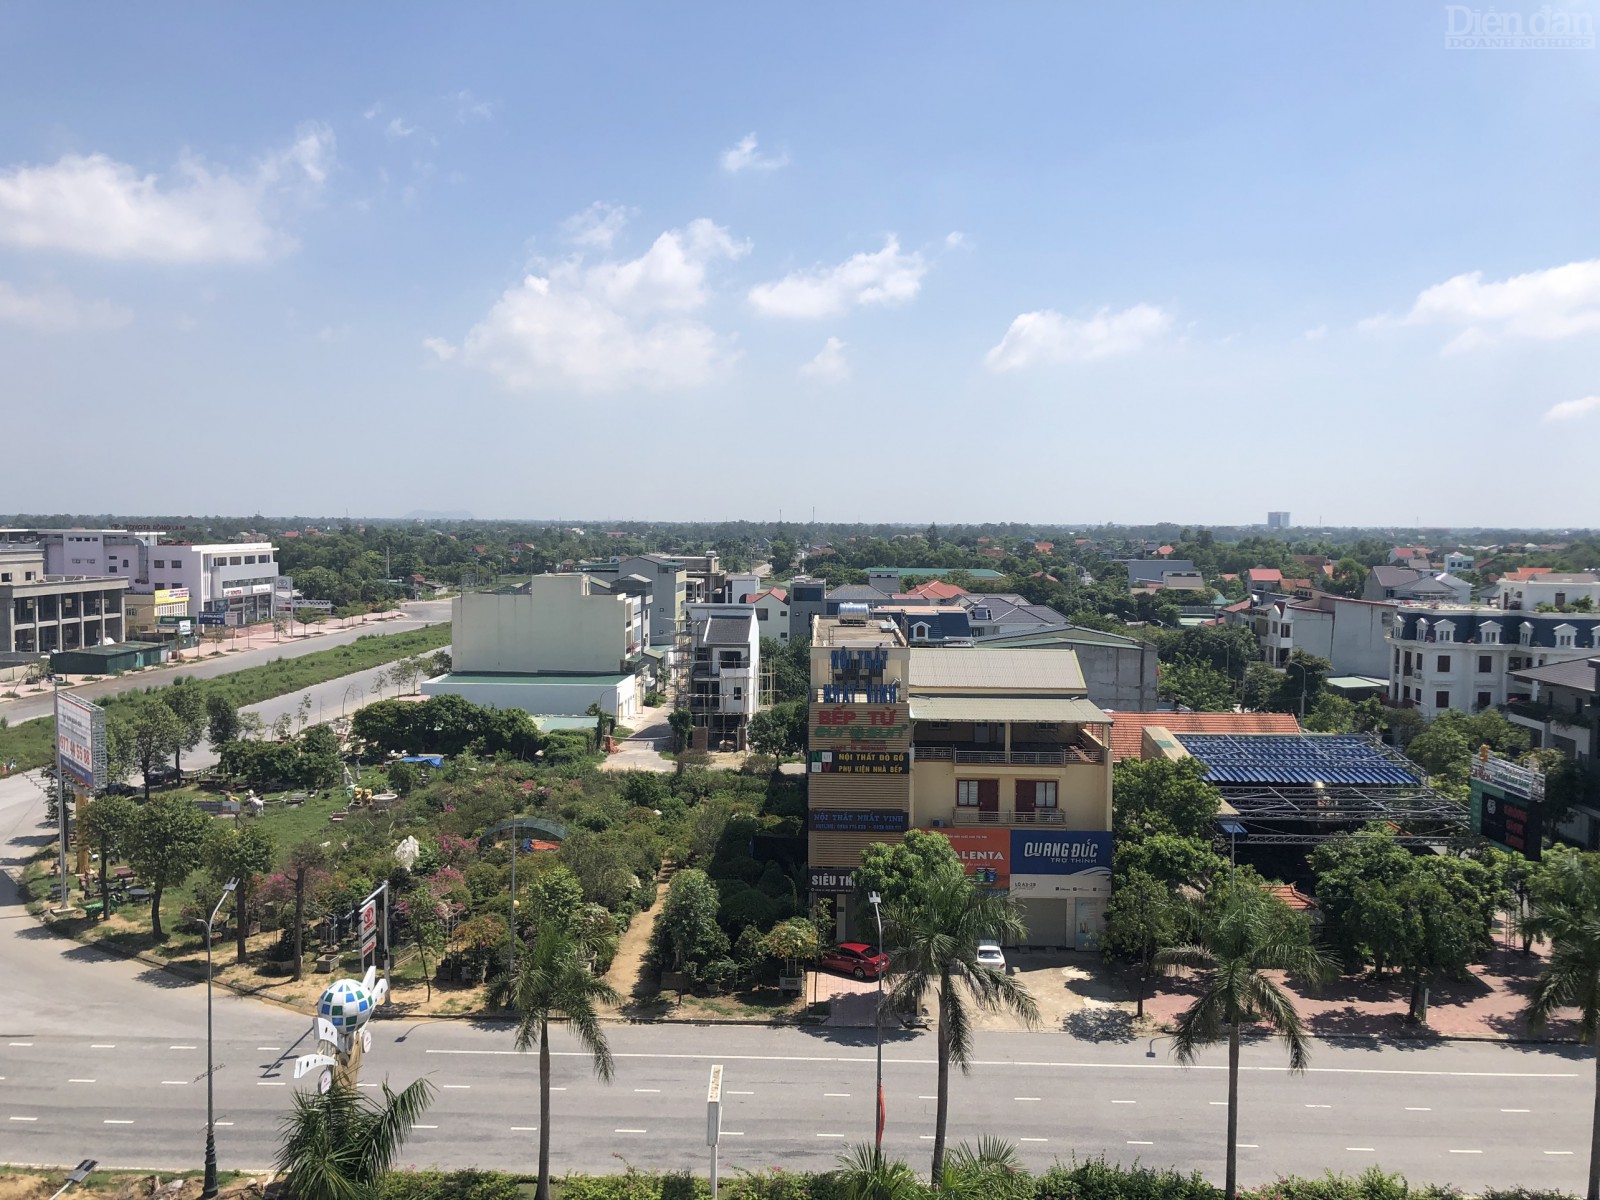 Một góc khu đô thị Minh Khang nhìn từ trên cao có thể thấy nhiều toà nhà cao, thấp khác nhau, bố trí quy hoạch lộn xộn.